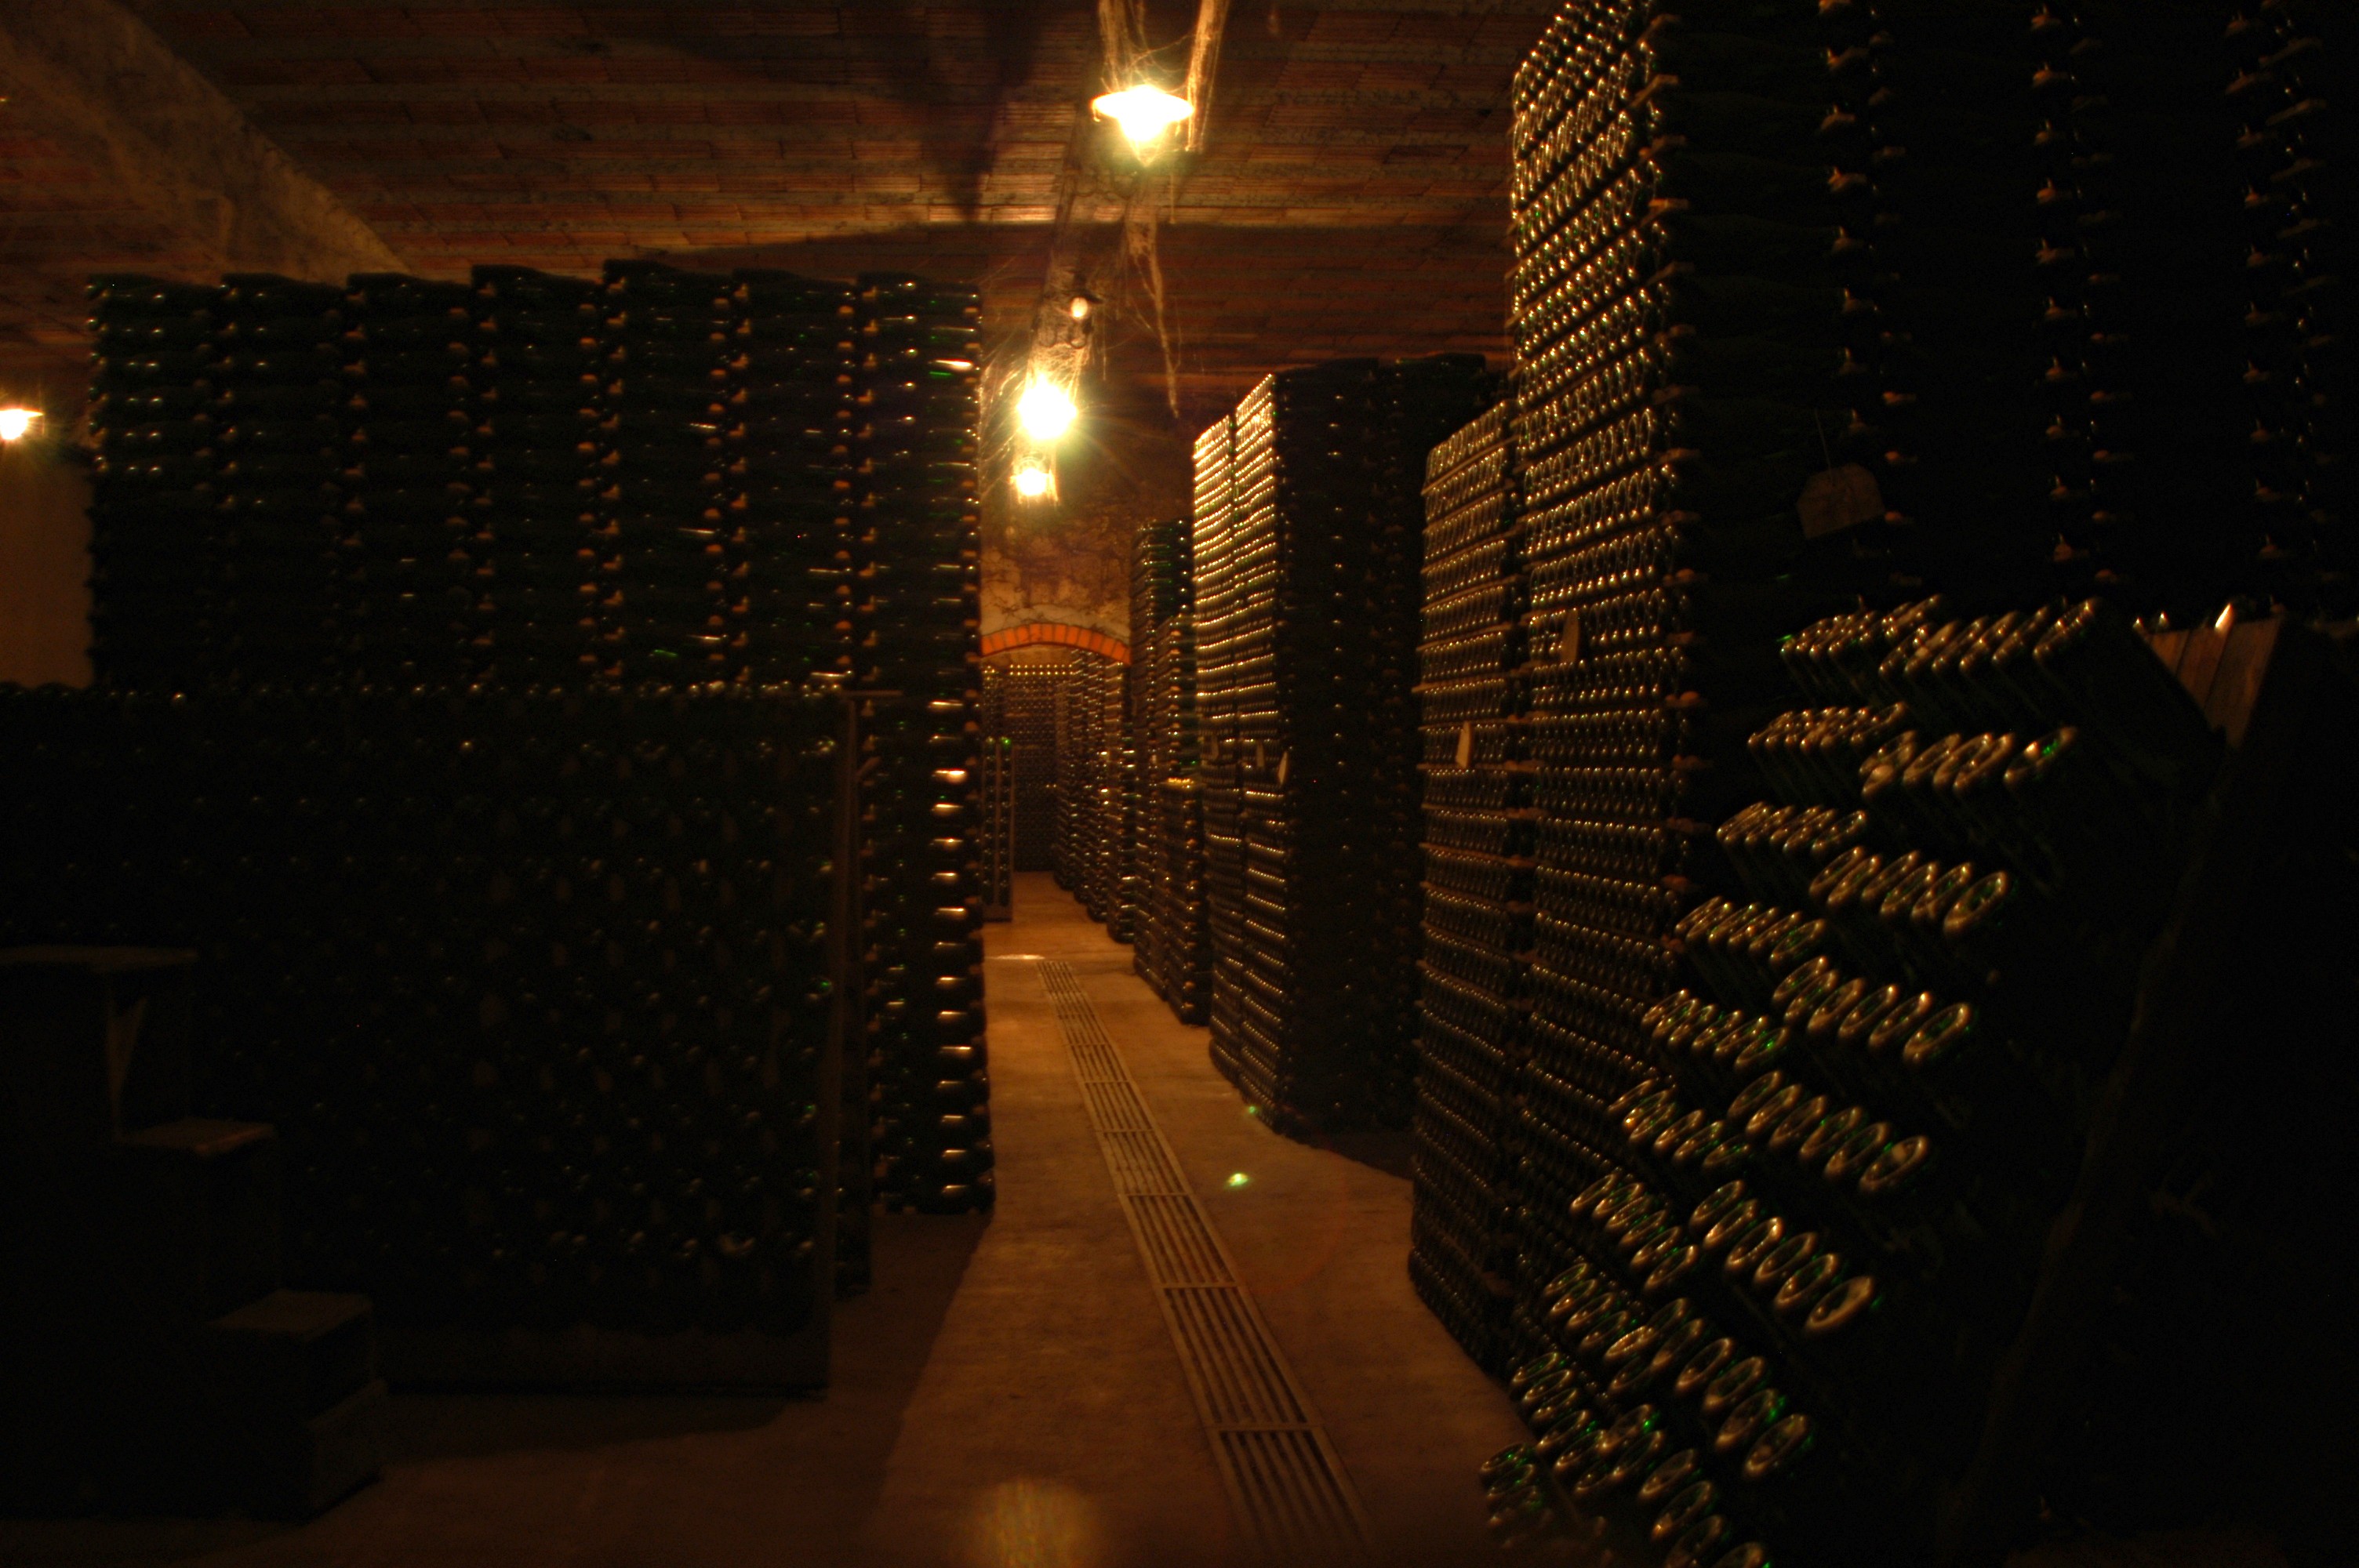 2004-04-Weinreise-Portugal-6736uRj563WLeOaj